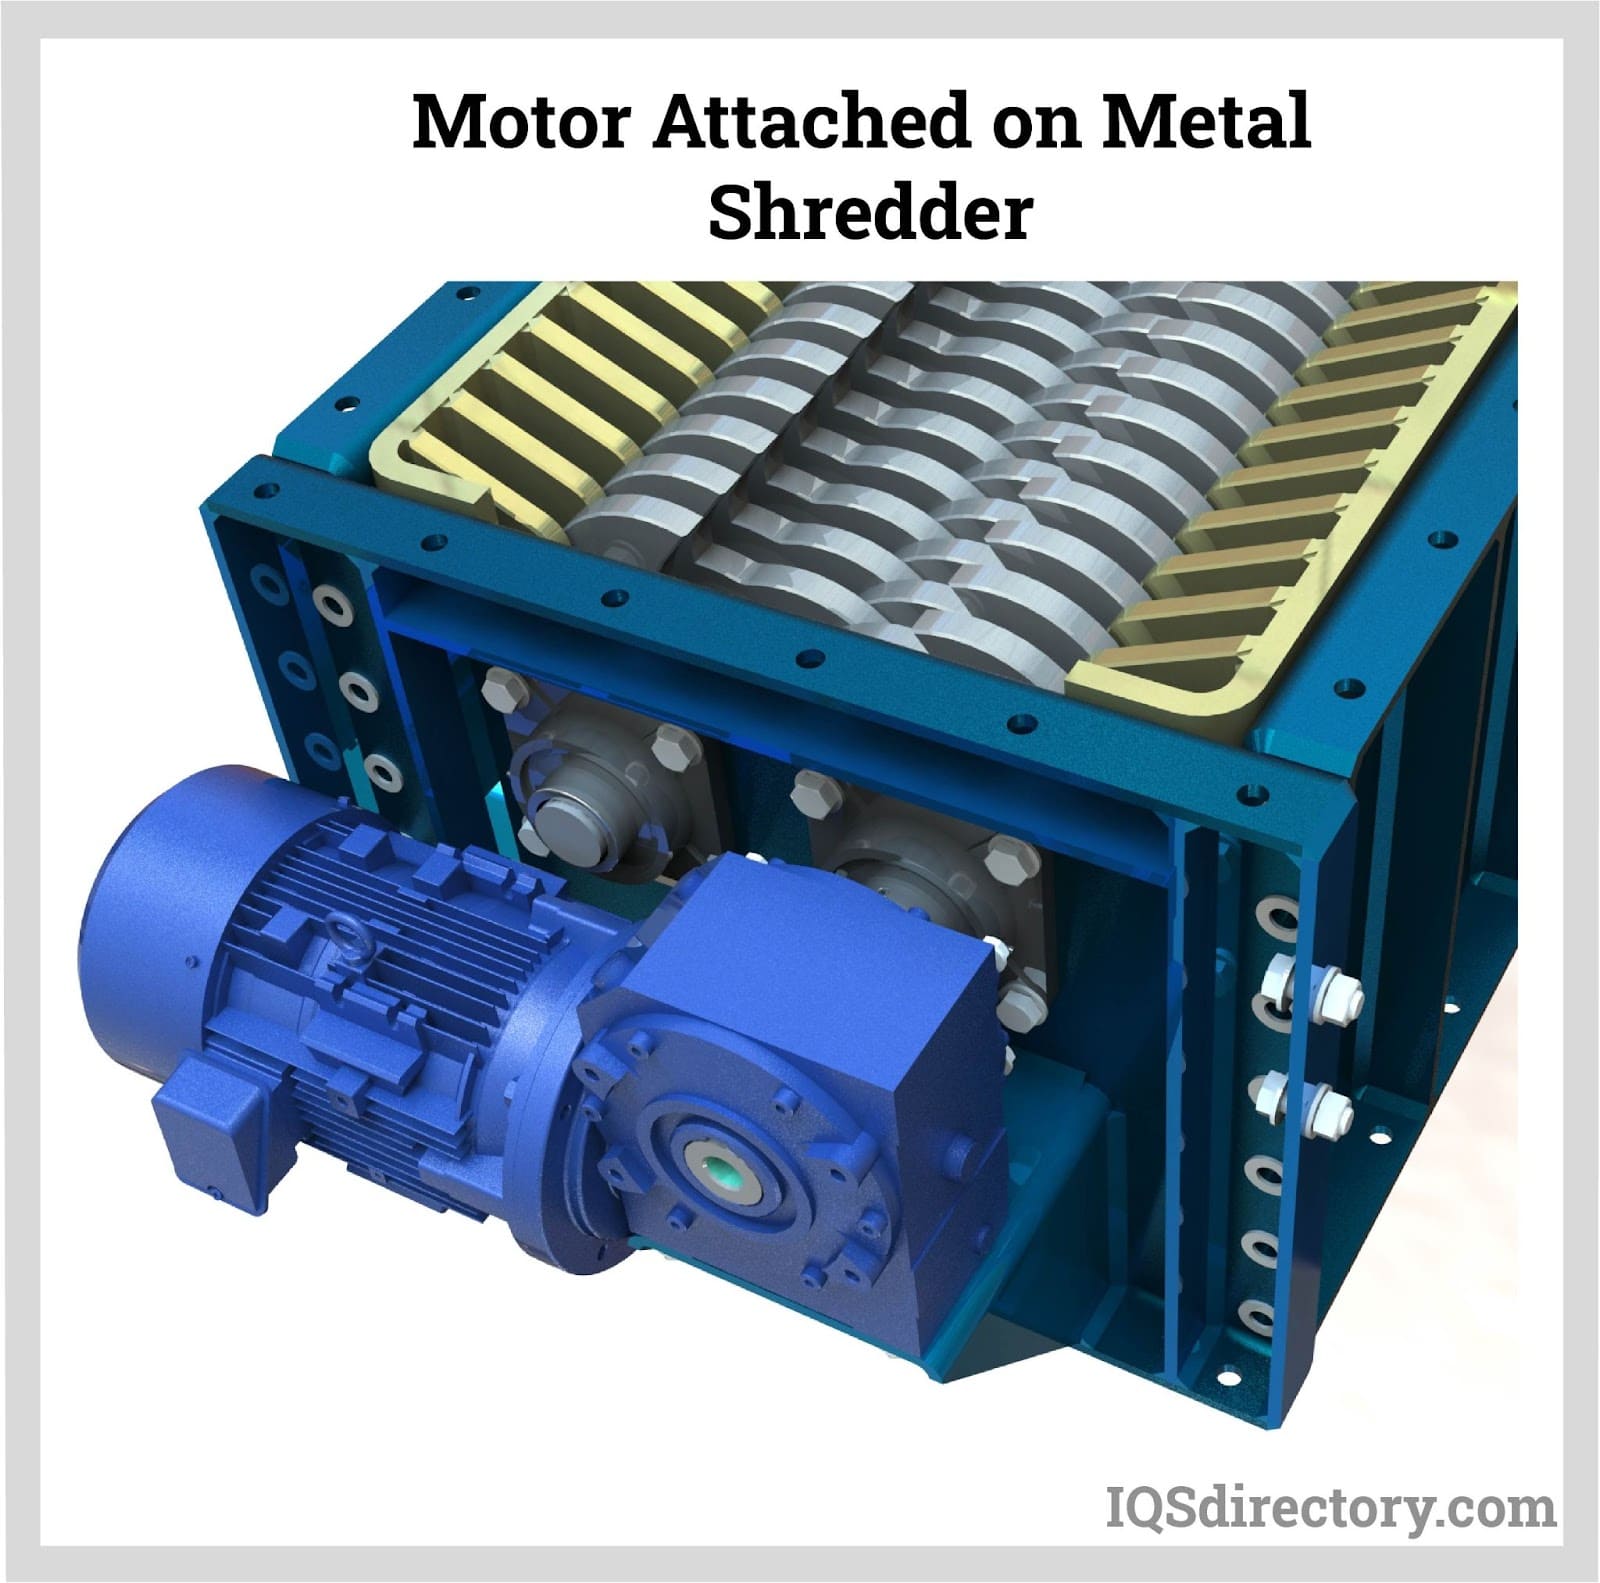 Motor Attached on Metal Shredder